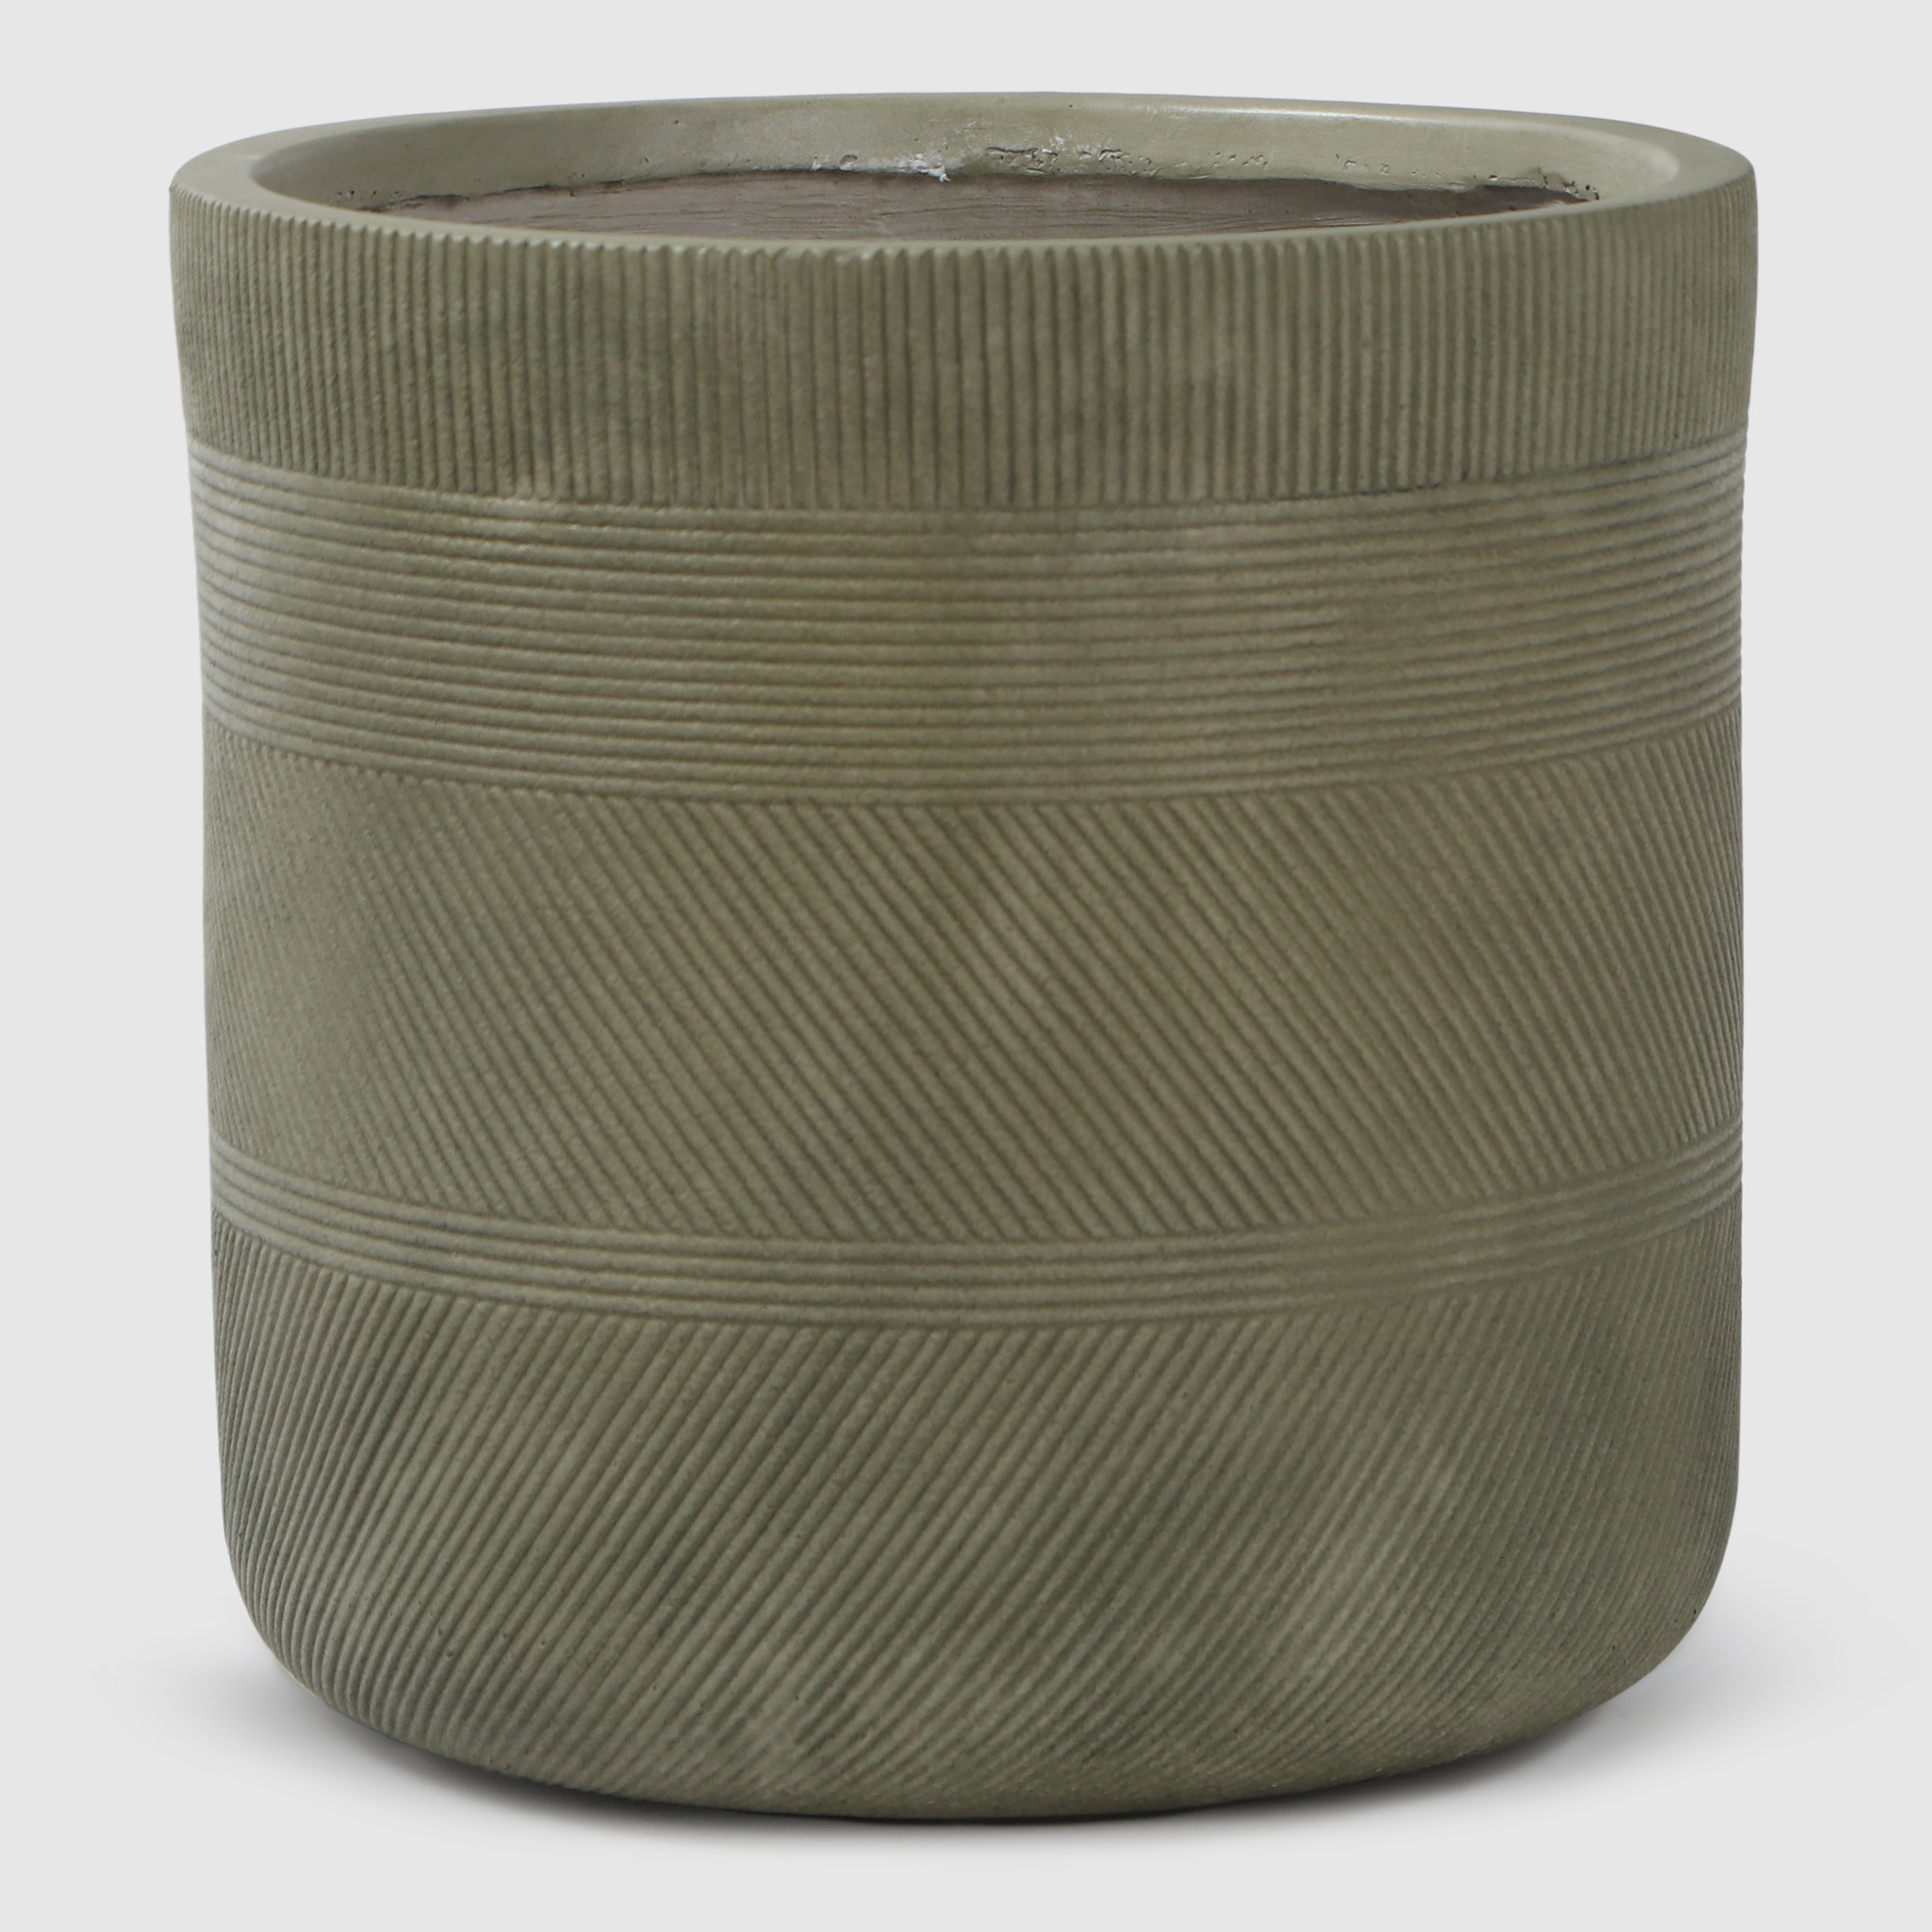 Где купить Горшок для цветов L&T Pottery цилиндр антик светло-зеленый D30 Без бренда 